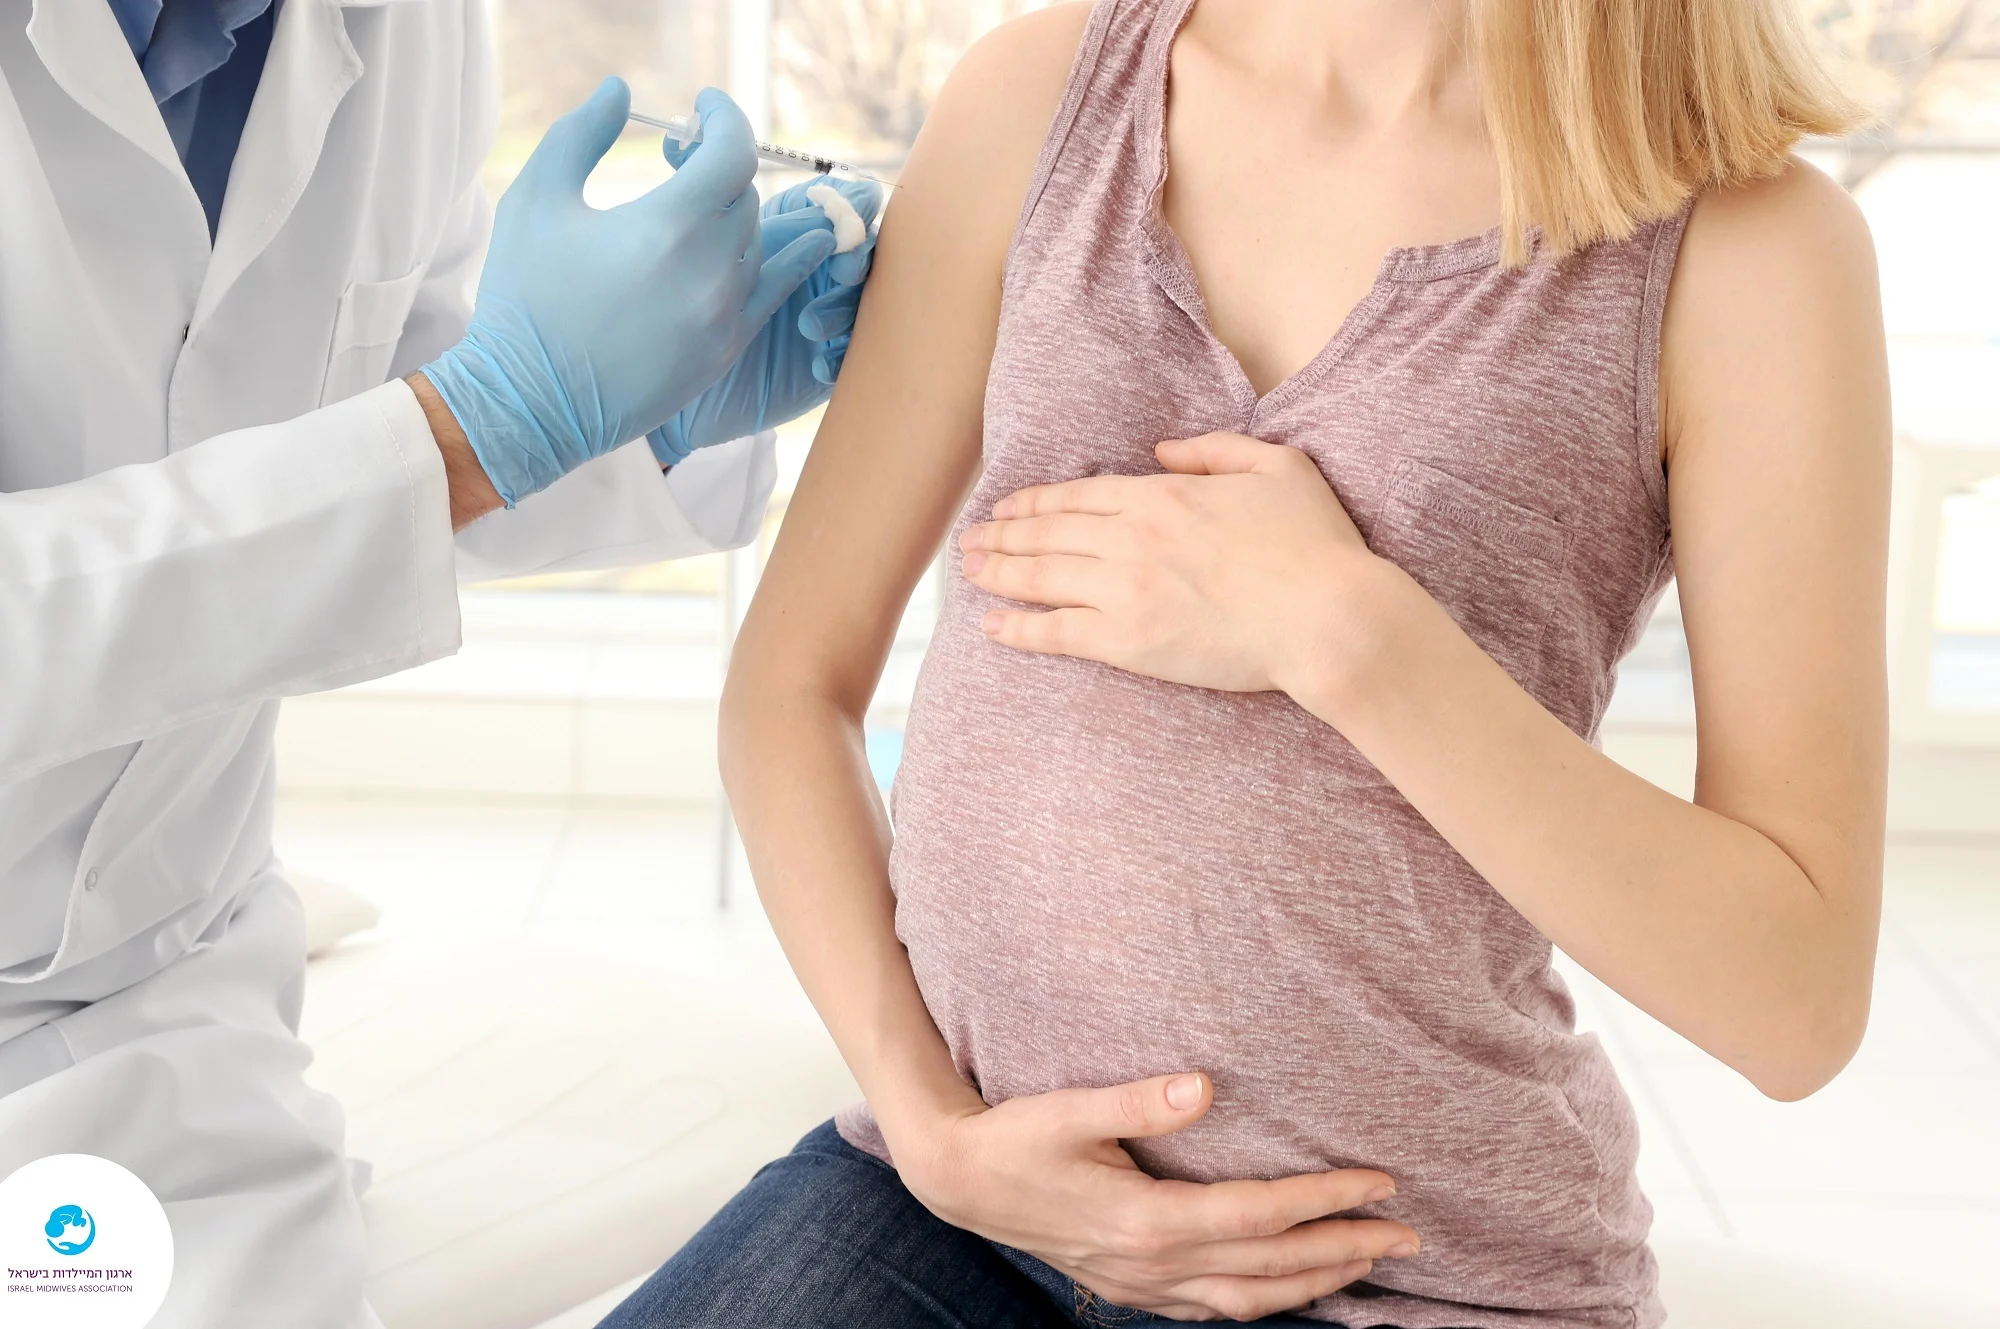 אישה בהיריון מתחסנת נגד שפעת